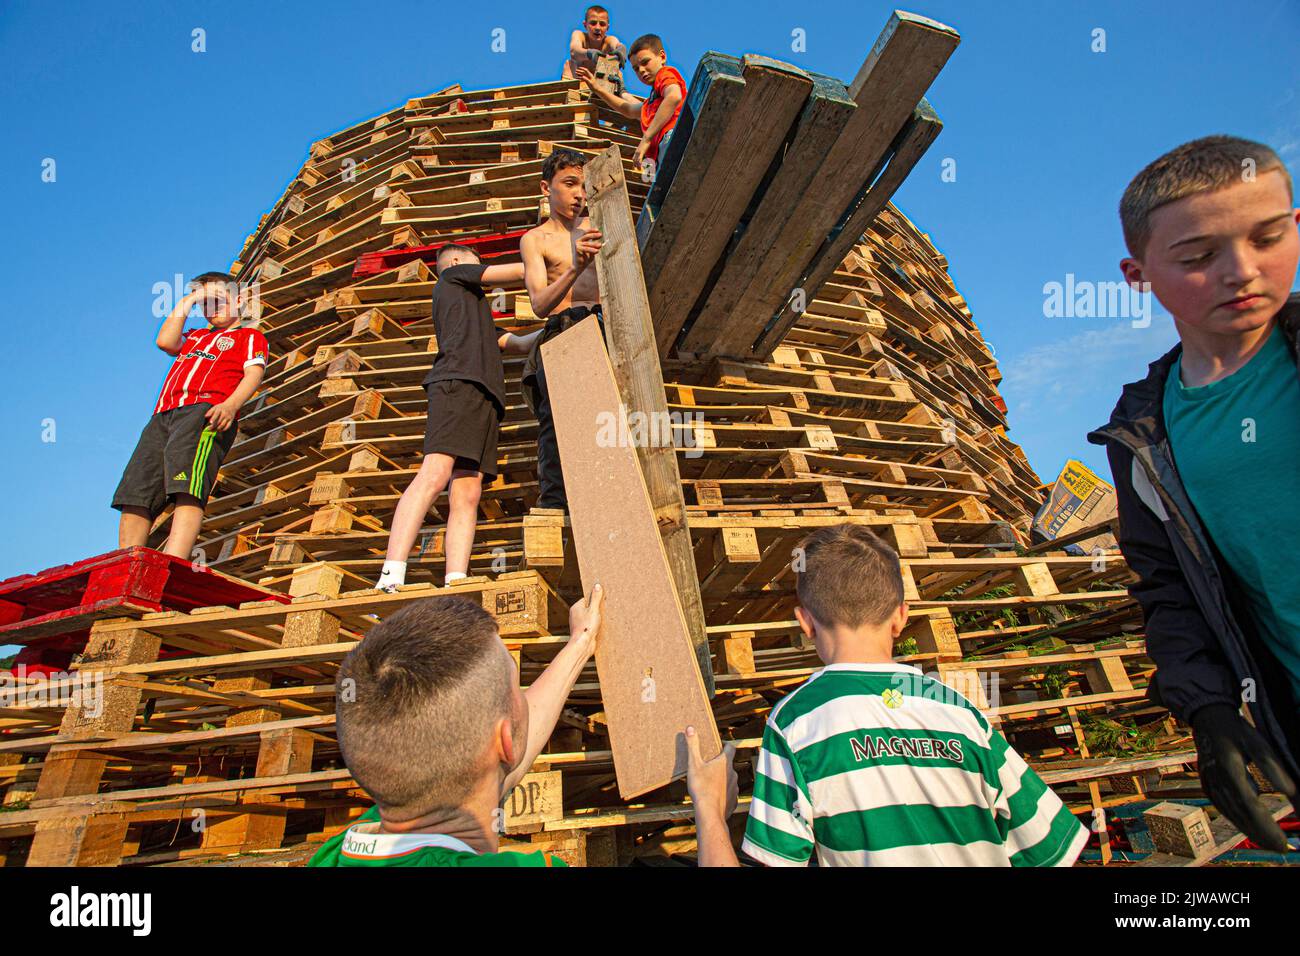 Kinder stapeln am Wochenende Paletten, um sich auf das Lagerfeuer vorzubereiten, das an einem katholischen Feiertag der Himmelfahrt der Jungfrau Maria in Bogside stattfindet. Stockfoto